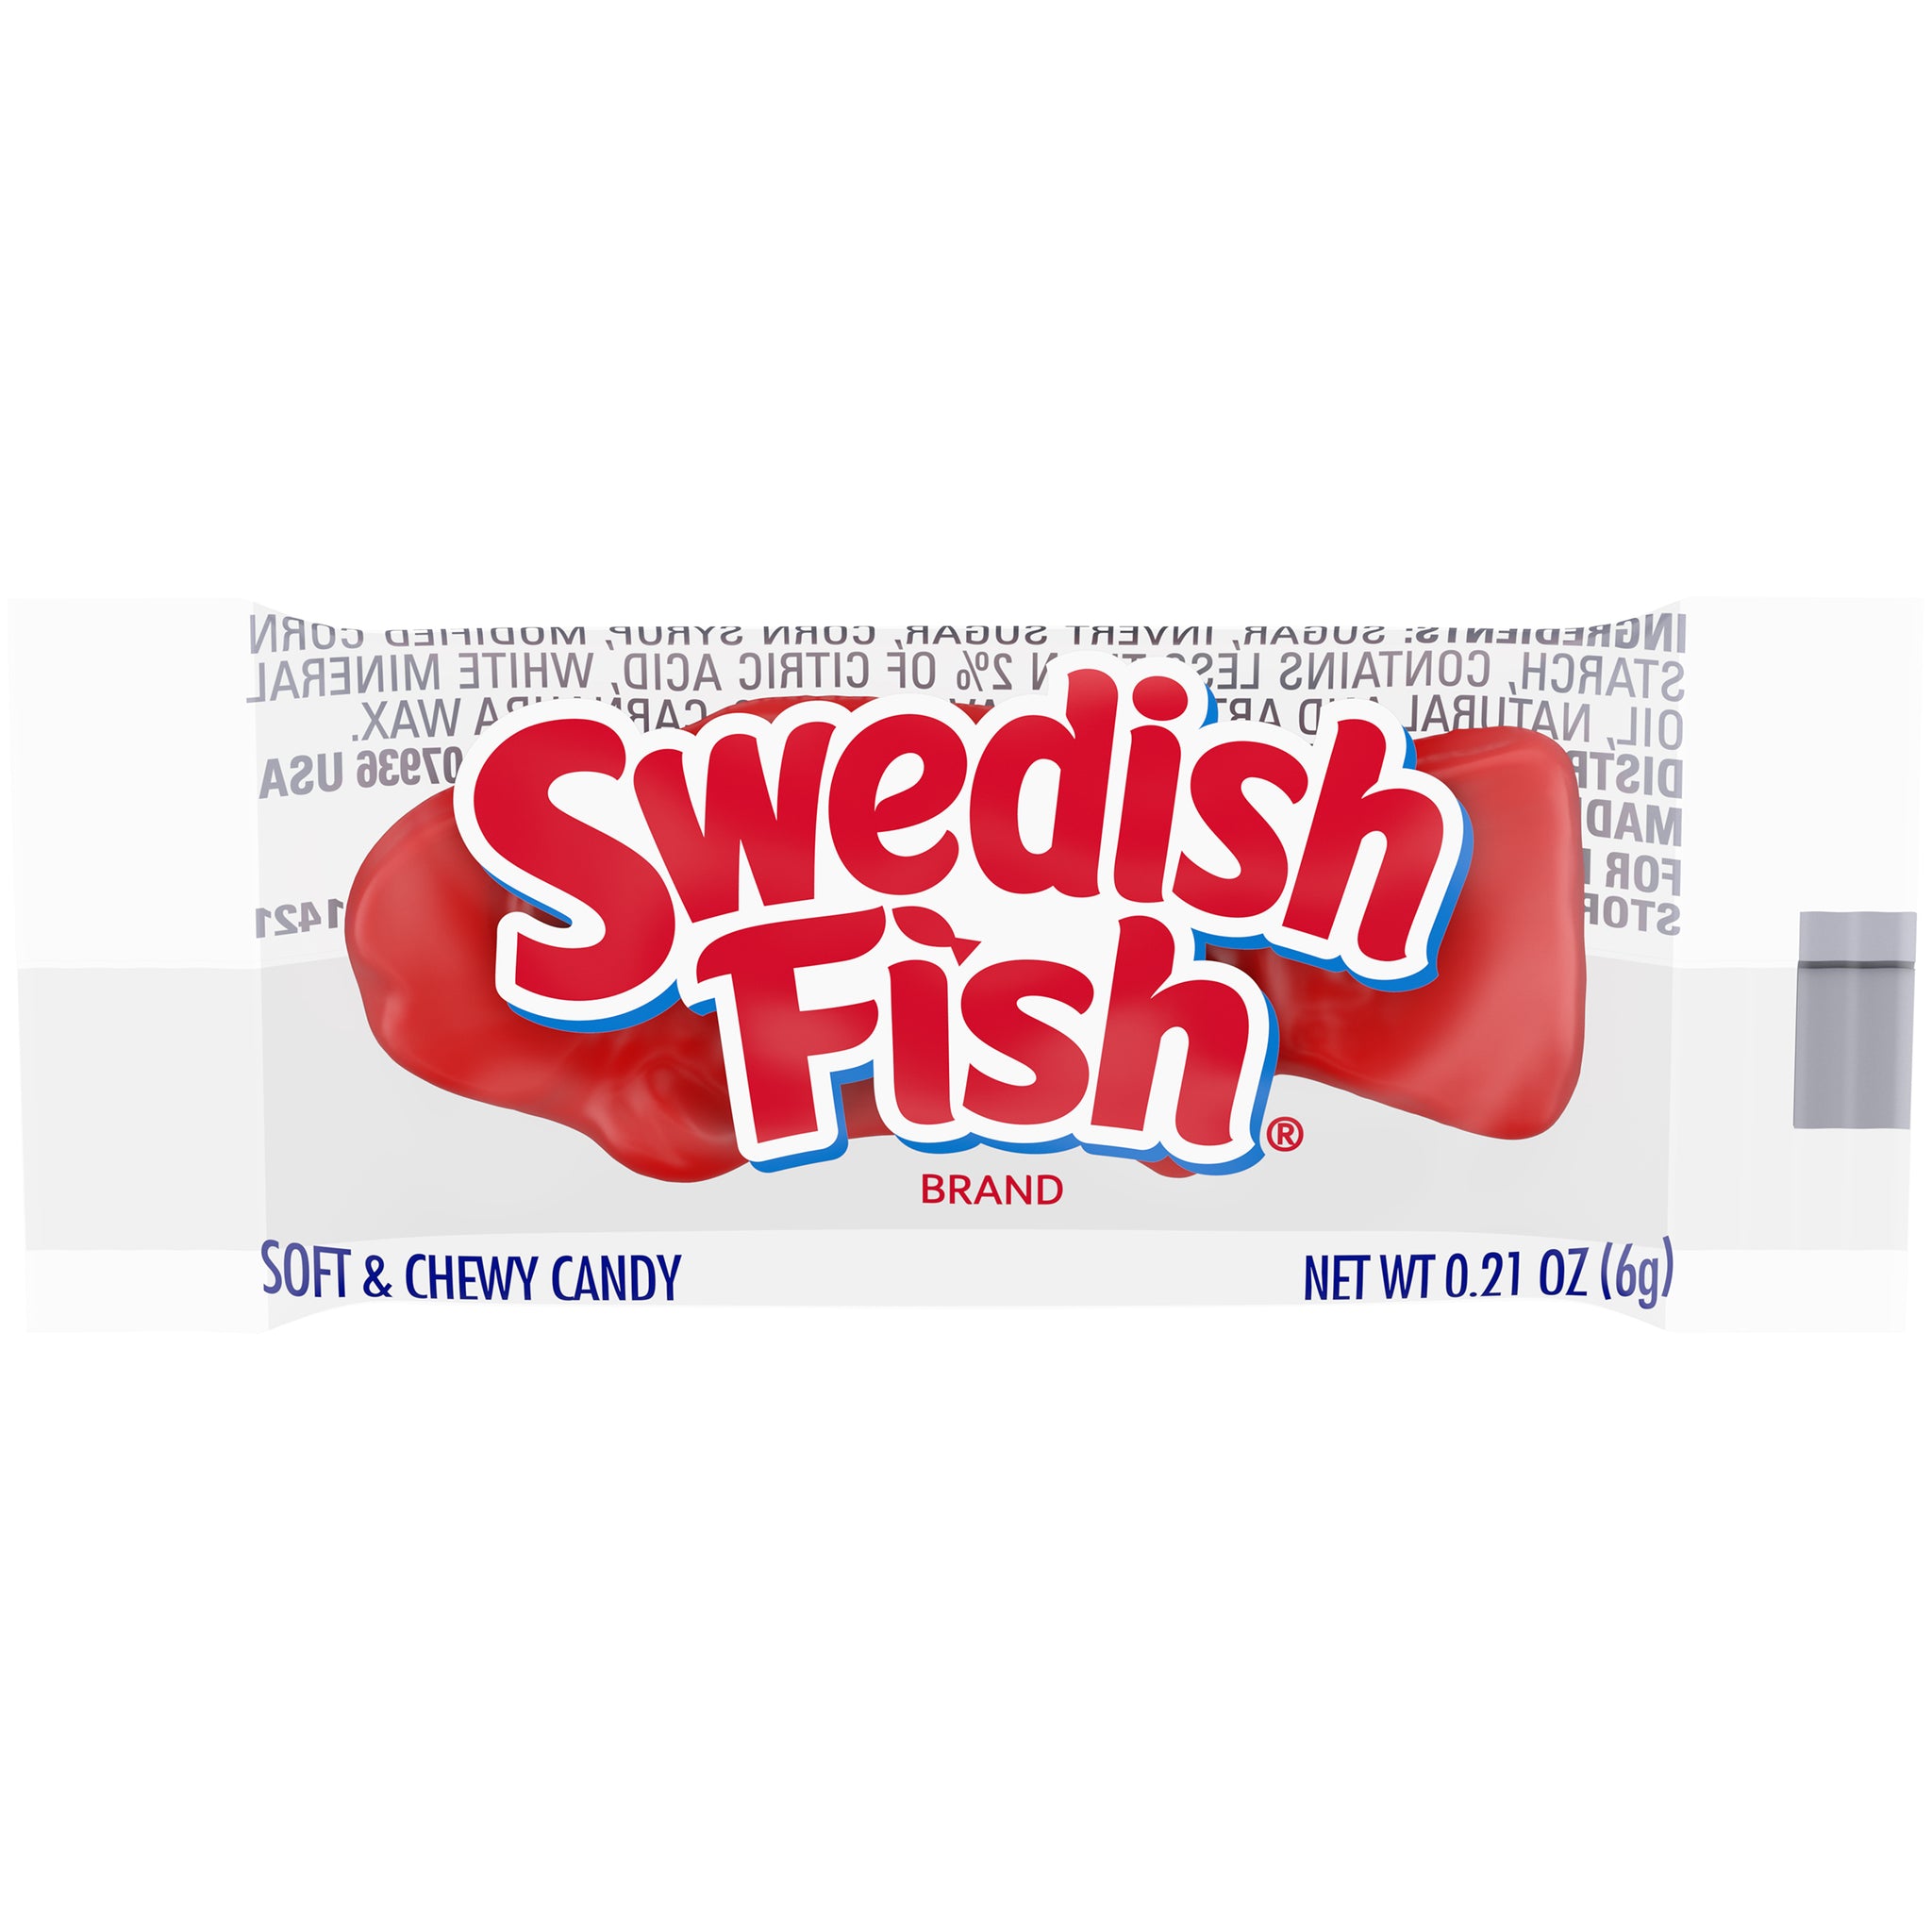 Swedish Fish 46.5 Oz. Box Of 240 - Office Depot